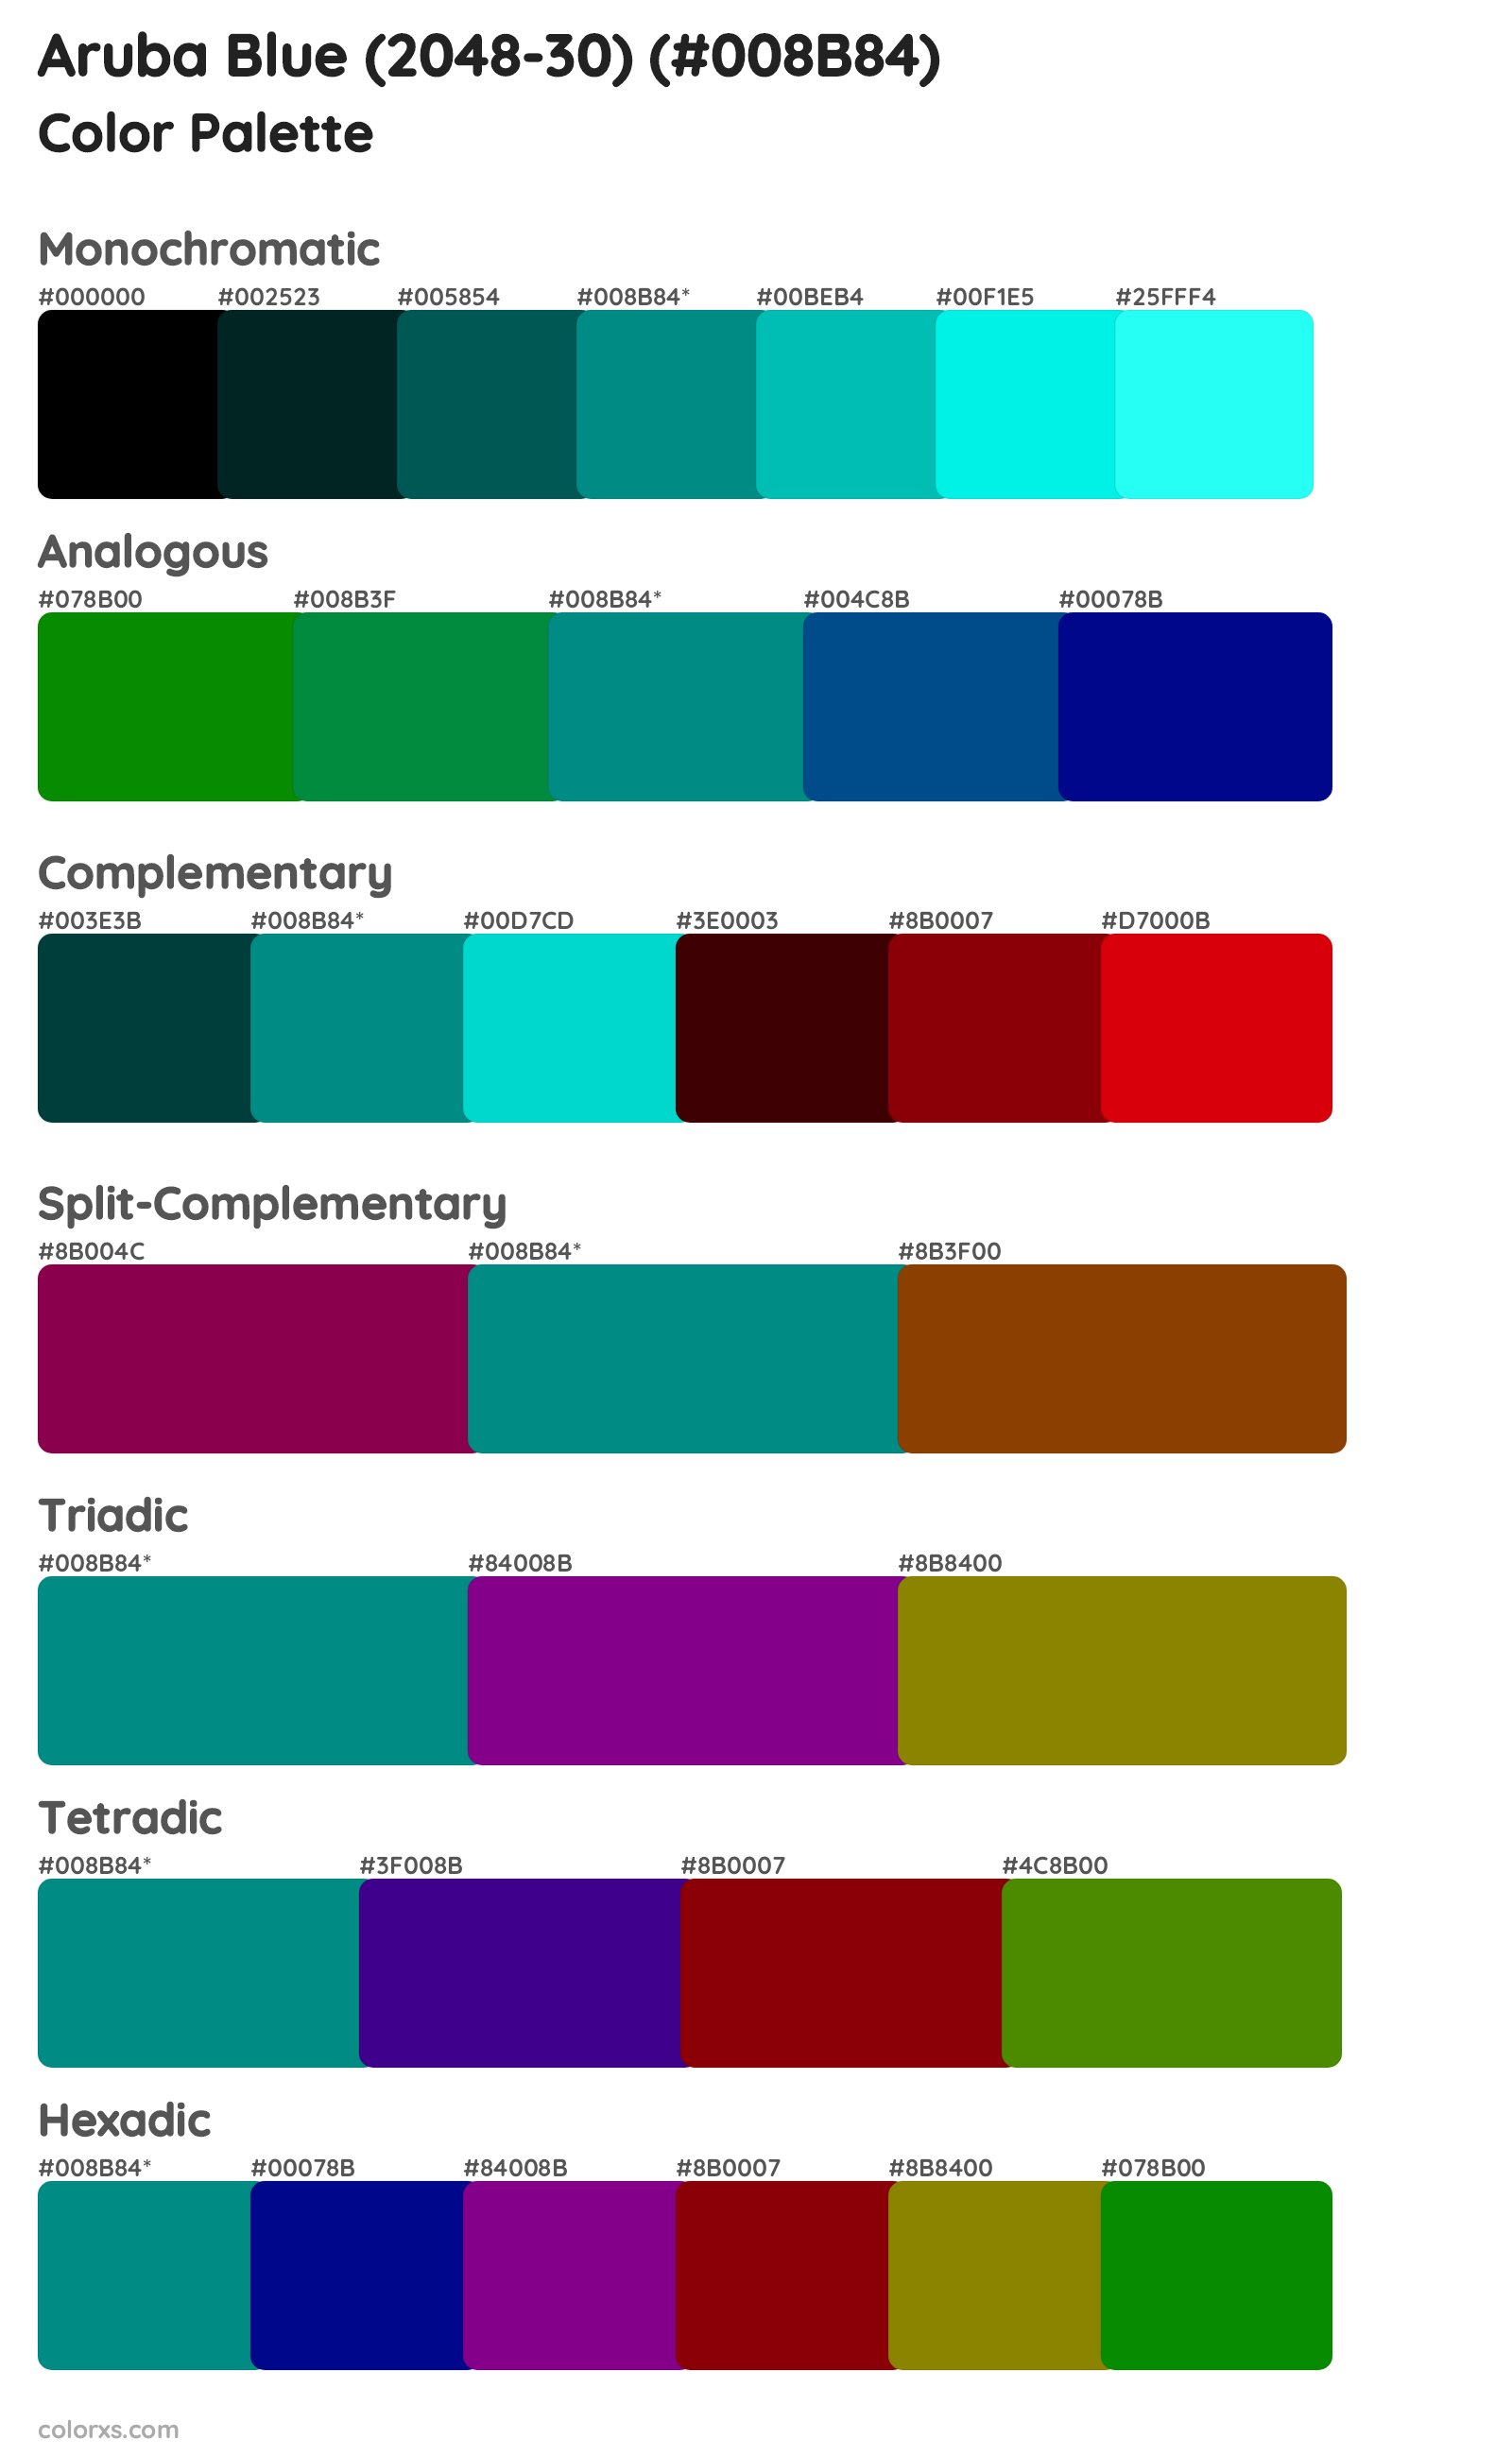 Aruba Blue (2048-30) Color Scheme Palettes